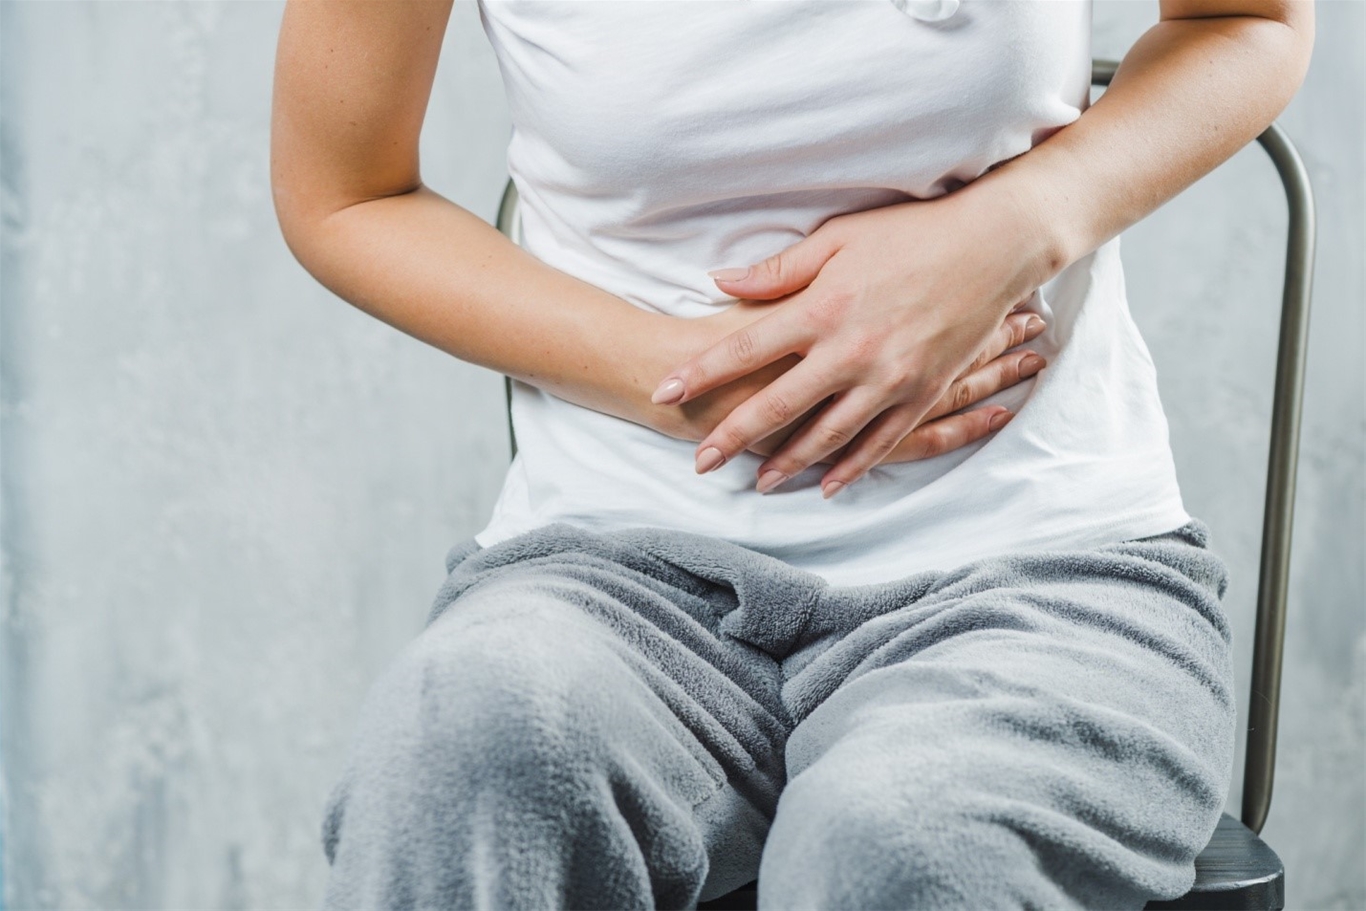 Cơn đau bụng thường kéo dài âm ỉ hoặc kéo dài từng cơn đi kèm cảm giác bỏng rát